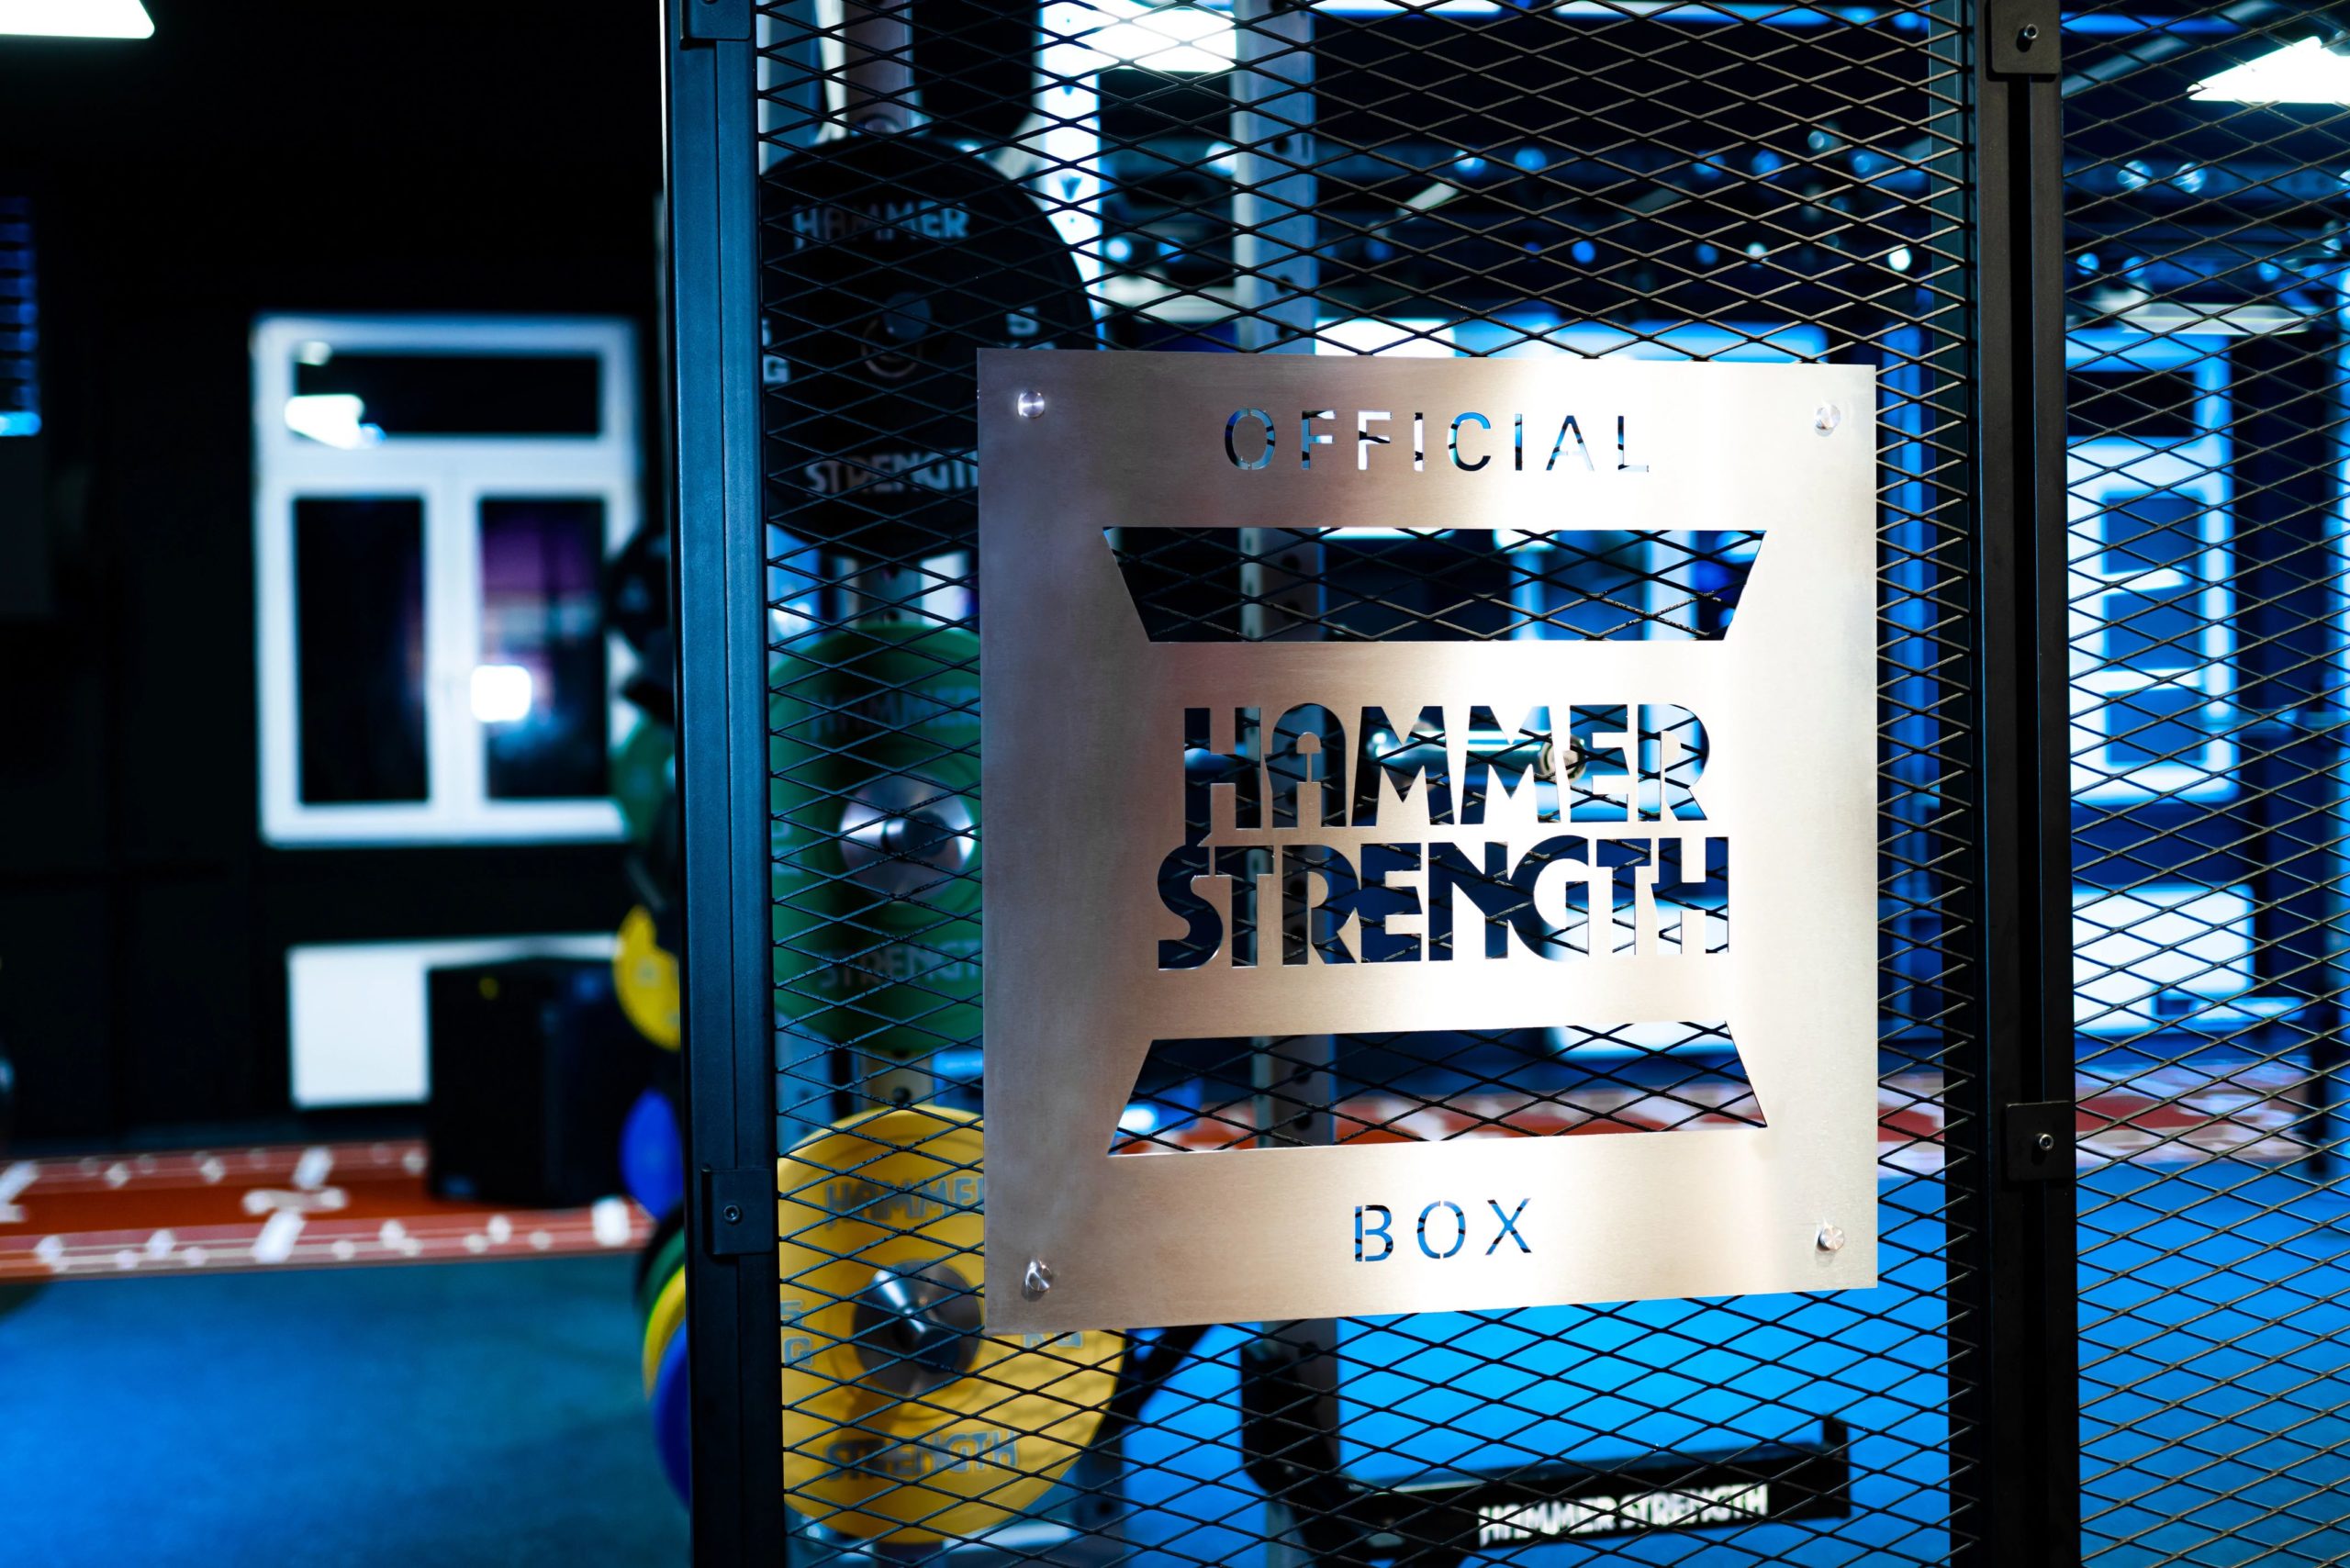 Bilde av logo til hammer strength box